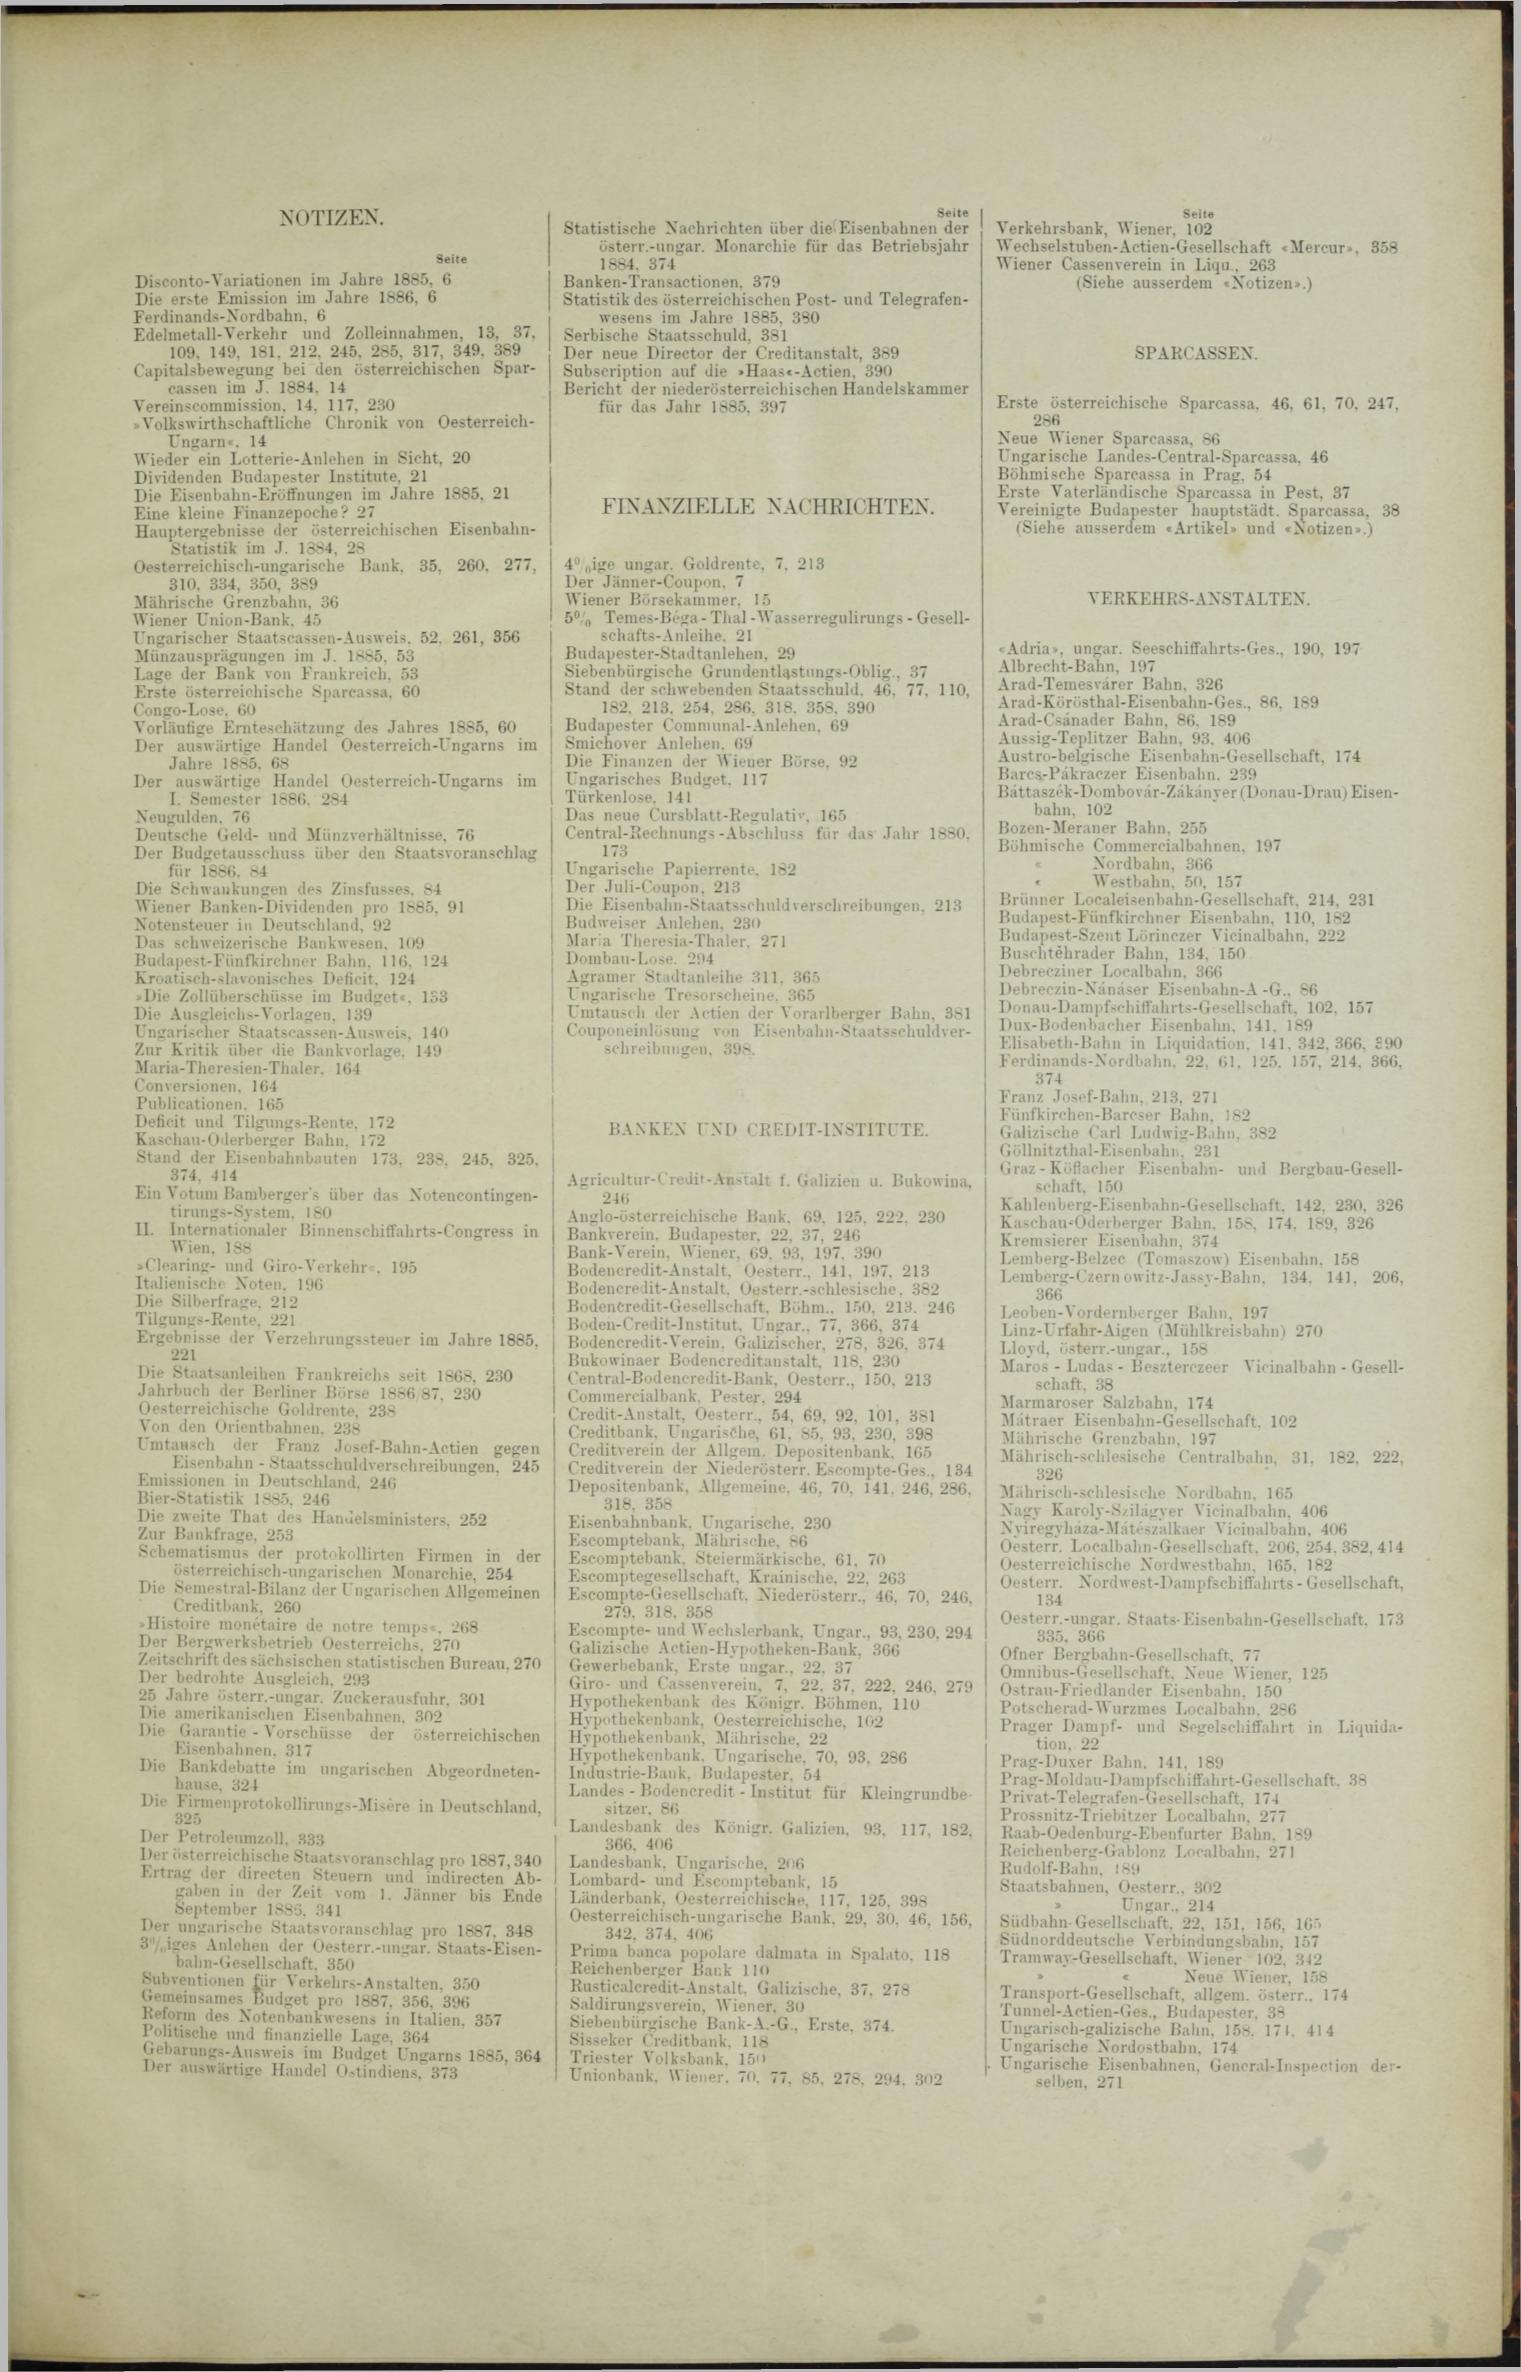 Der Tresor 17.06.1886 - Seite 11